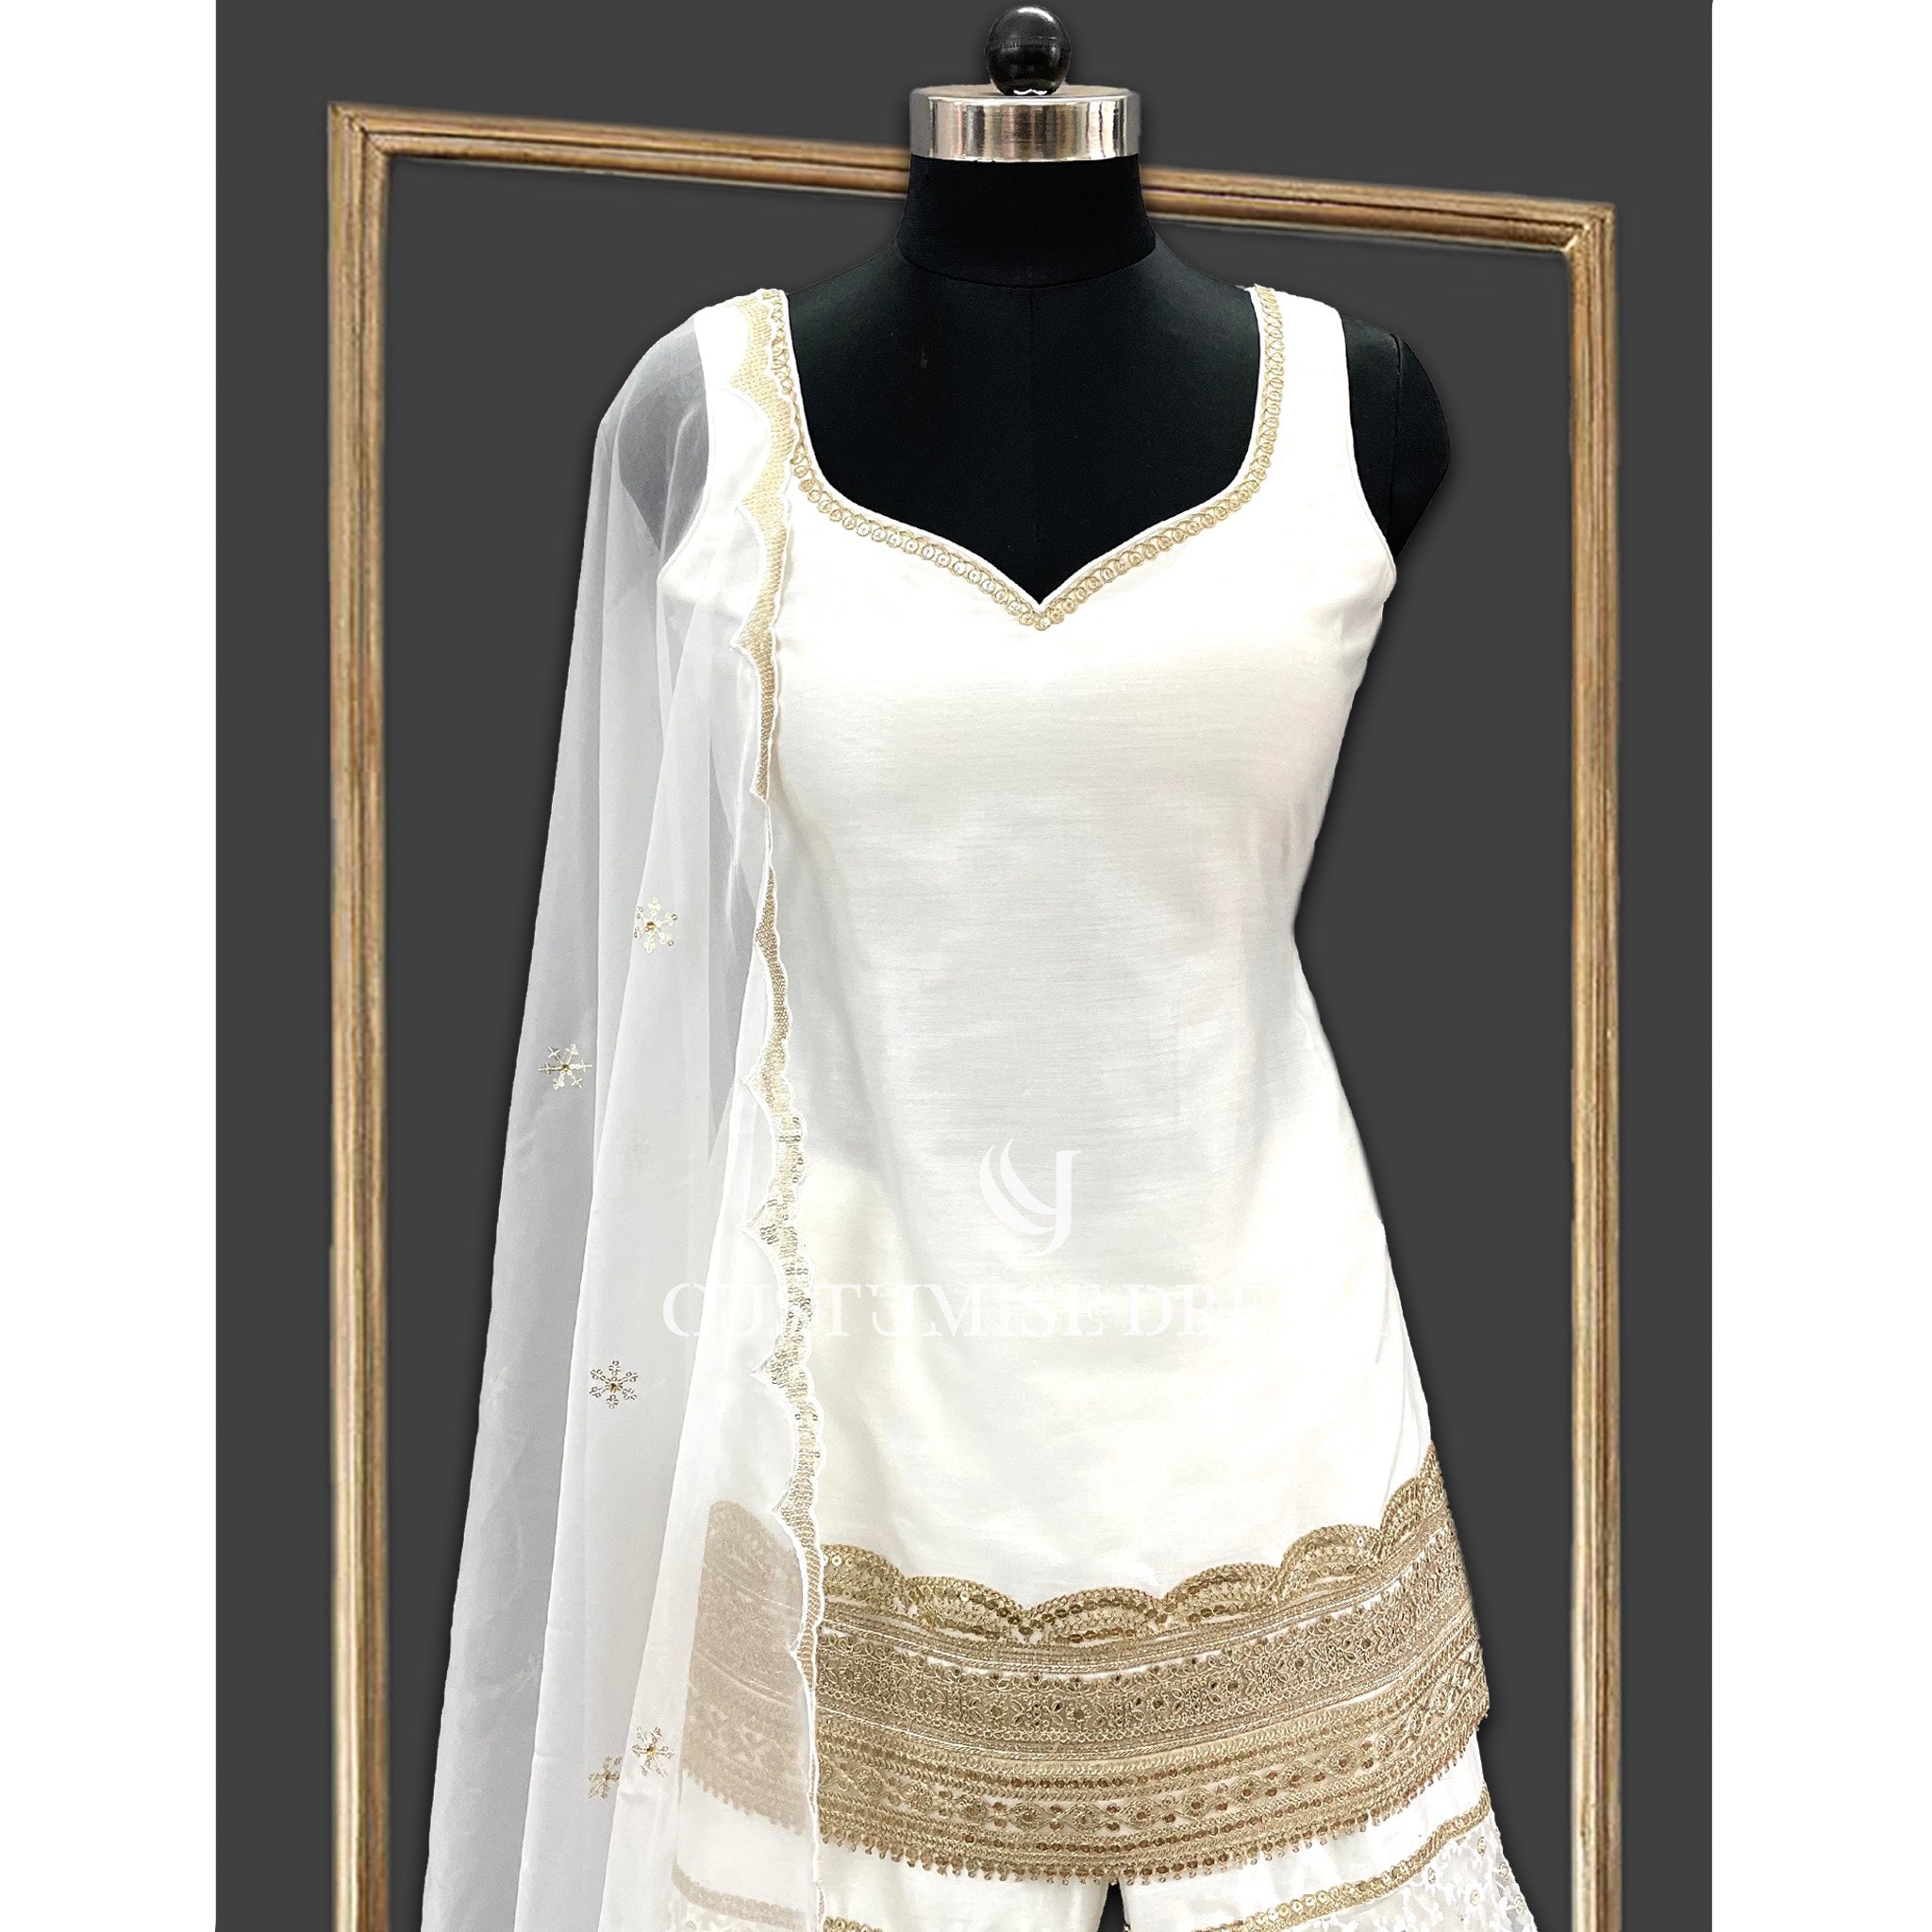 White Floral Elegance: Embroidered Sharara Set - Indian Designer Bridal Wedding Outfit